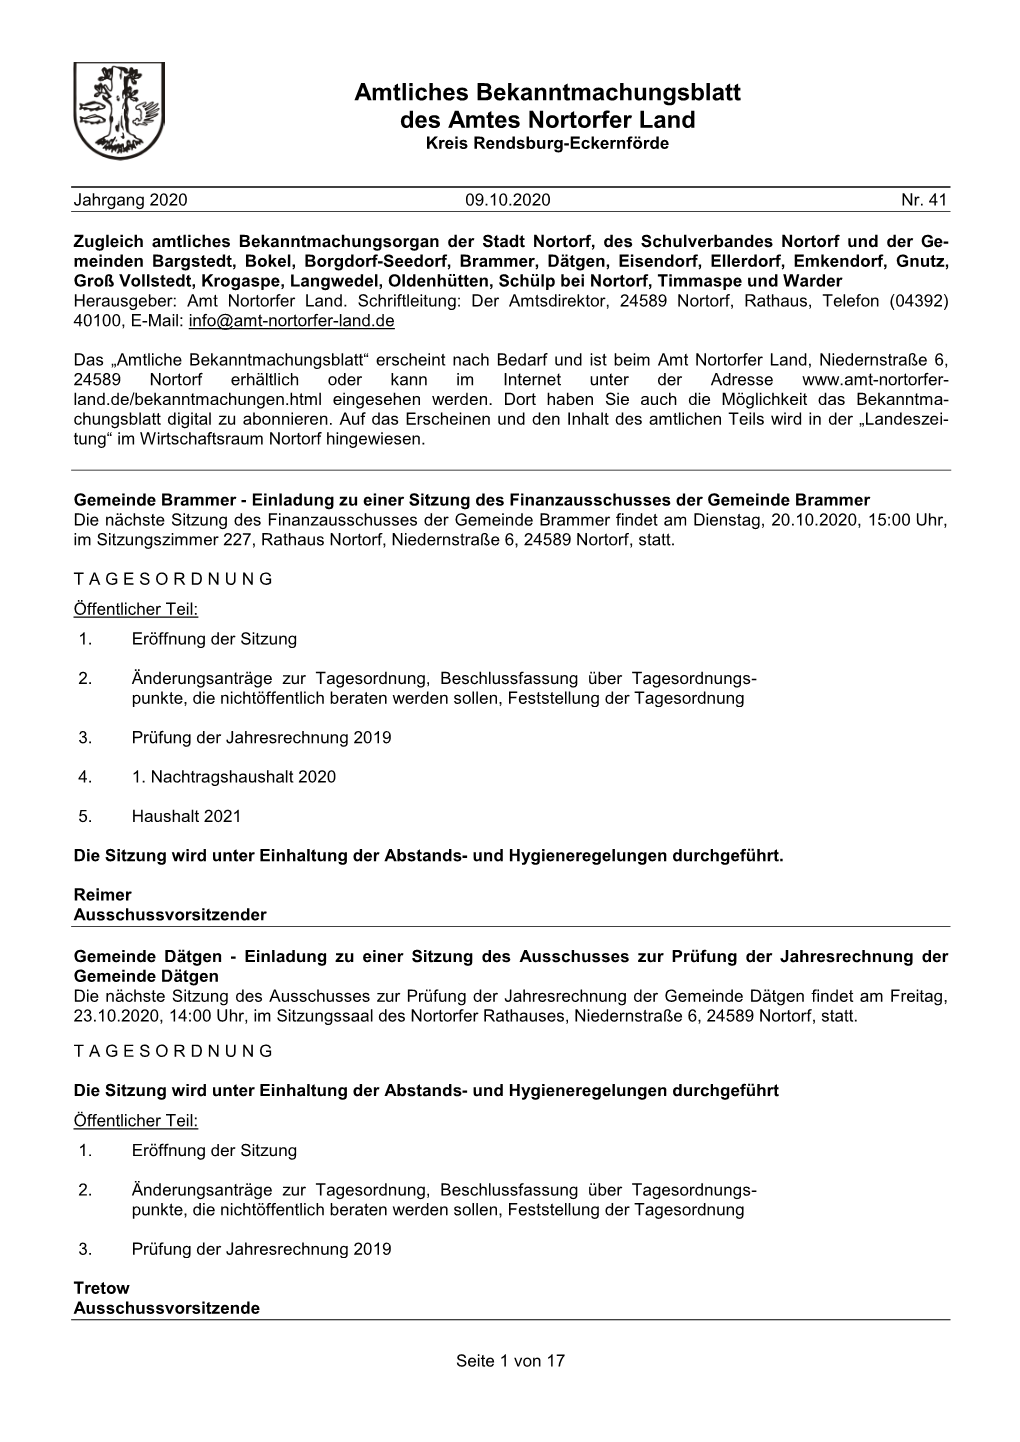 Amtliches Bekanntmachungsblatt Des Amtes Nortorfer Land Kreis Rendsburg-Eckernförde